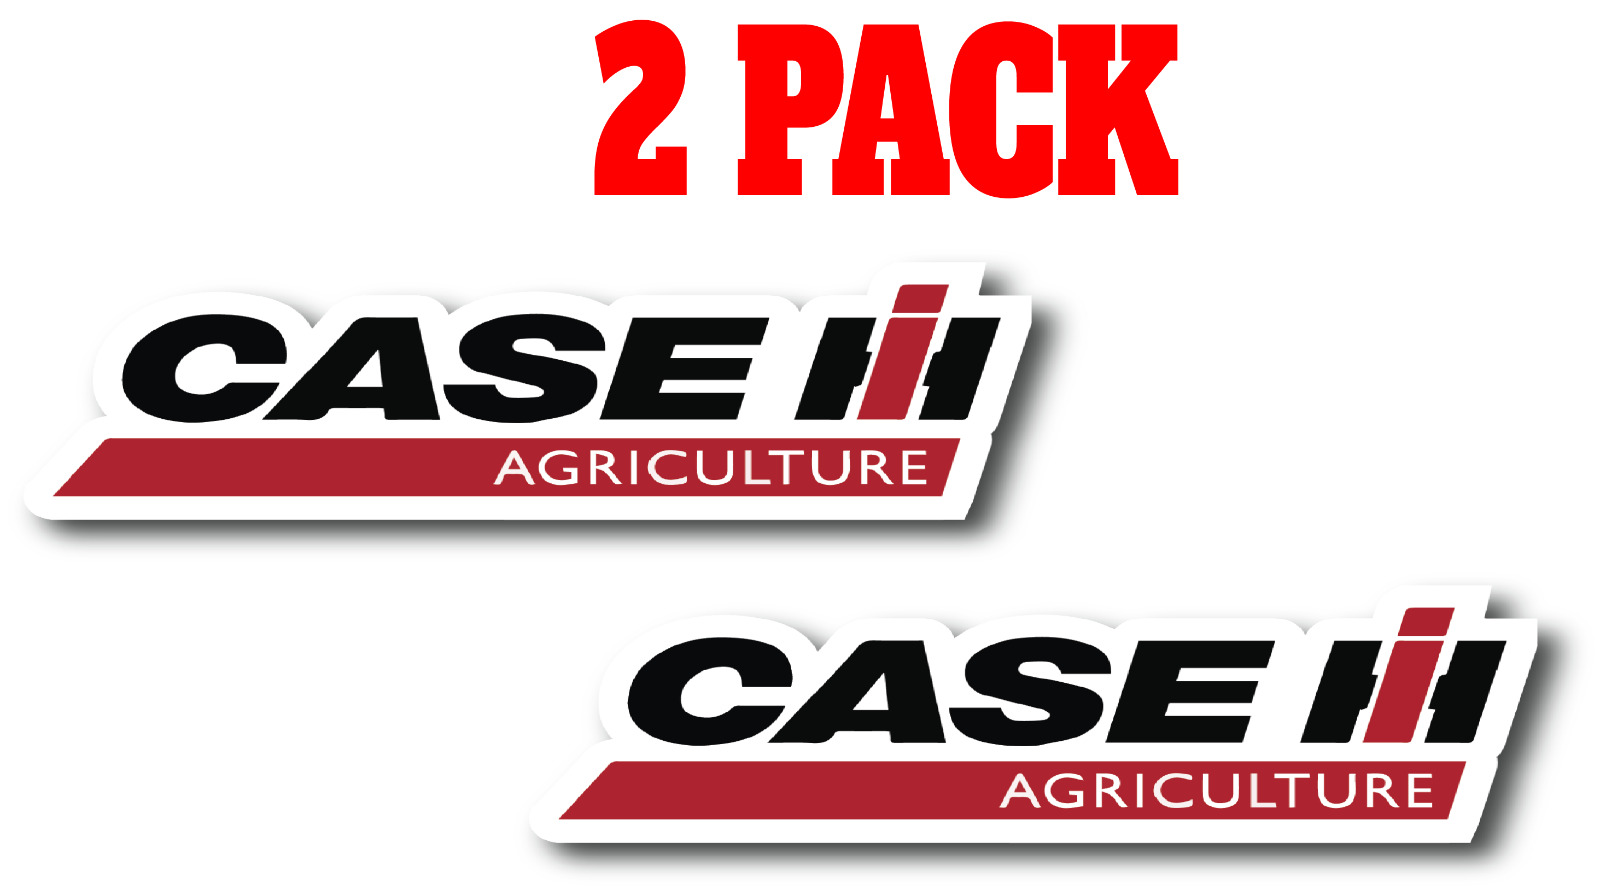 Case IH Agriculture Premium Vinyl Decal / Sticker 2 Pack - Farm Equipment Logo